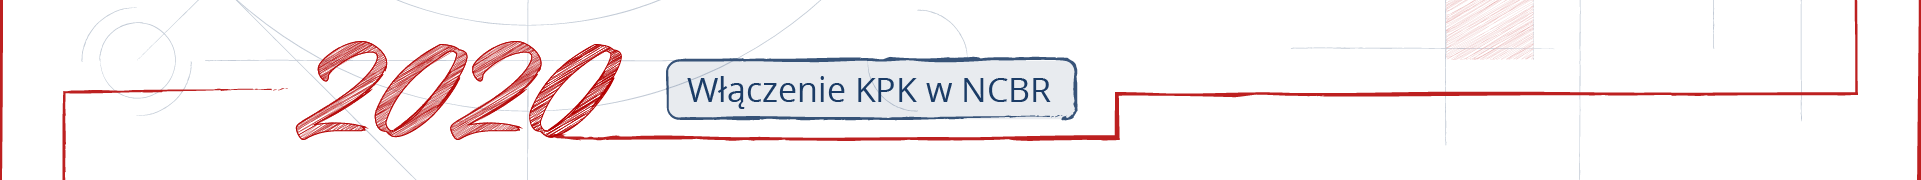 Fragment osi czasu. Ozdobny napis 2020, obok ramka z napisem „Włączenie KPK w NCBR”.